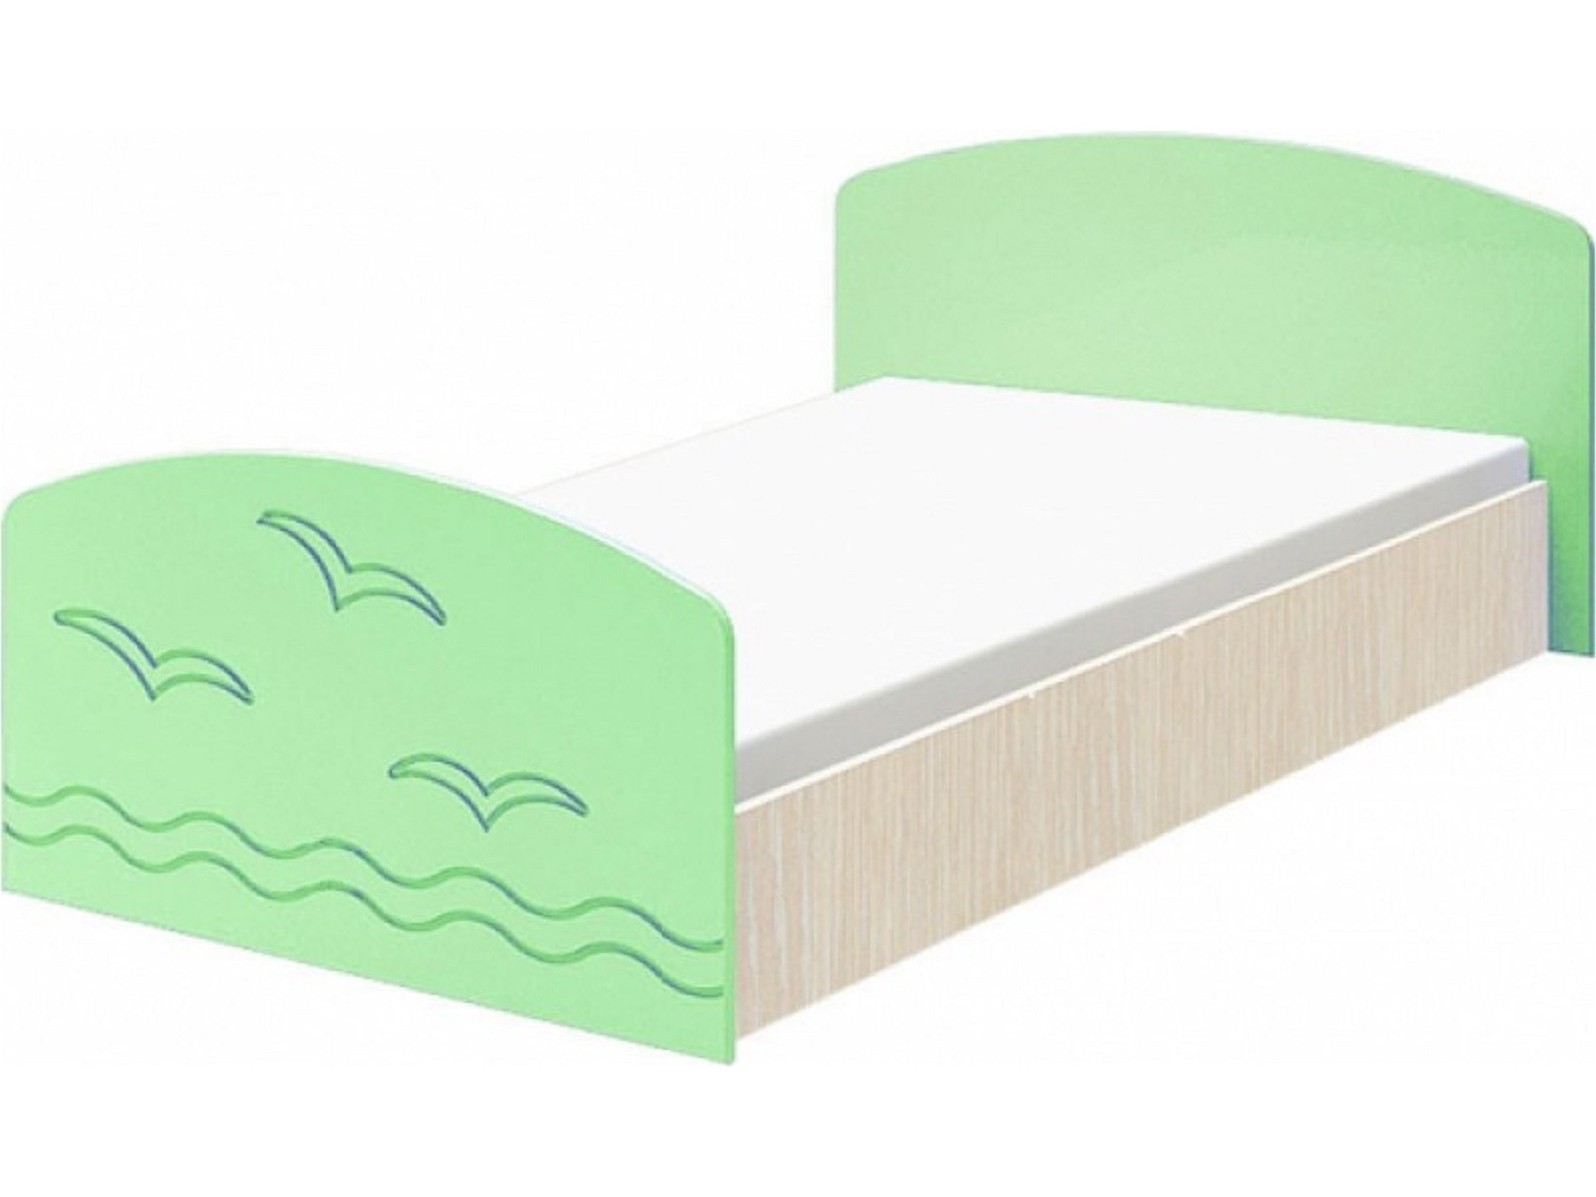 Юниор-2 Детская кровать 80, матовый (Салатовый, Дуб белёный) Салатовый, МДФ, ЛДСП юниор 2 стенка матовый салатовый дуб белёный зеленый мдф лдсп